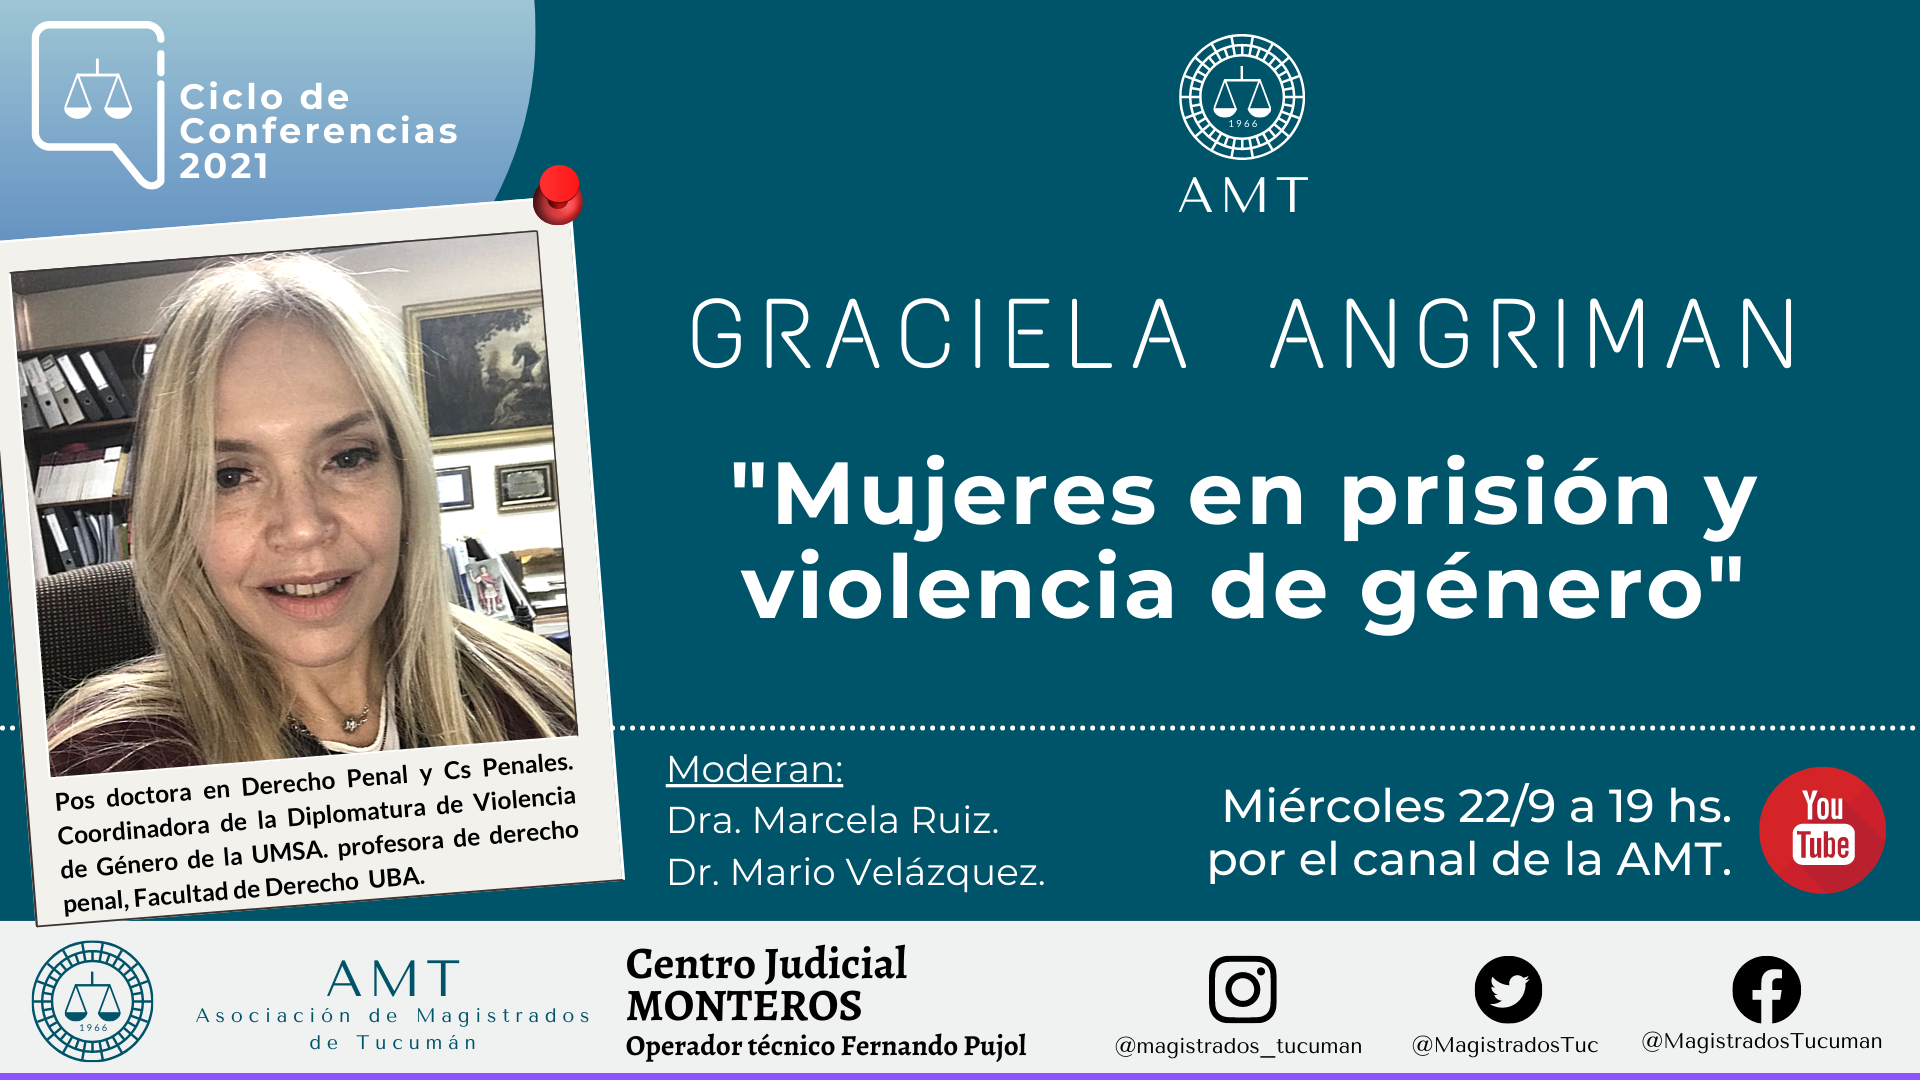 Vuelva a ver la conferencia de Graciela Angriman «Mujeres en prisión y violencia de género»